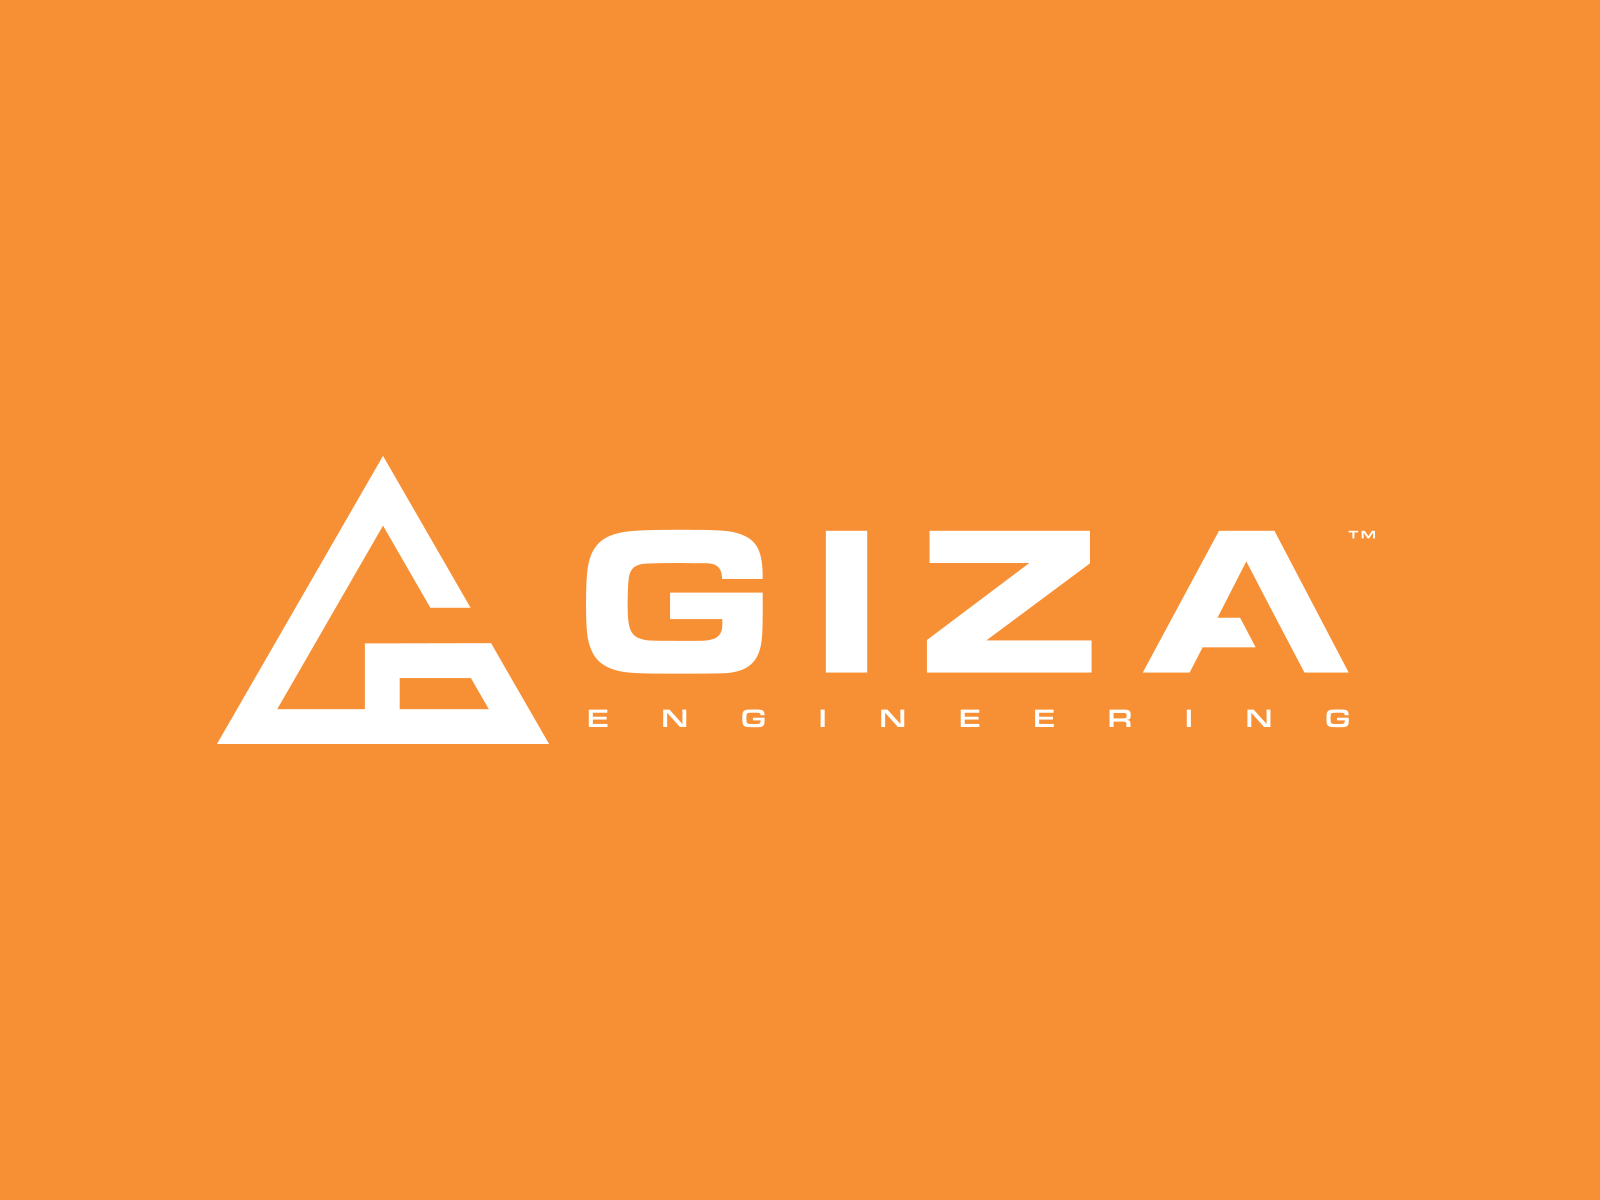 Giza Engineering Company Logo By Filip Marjanovic On Dribbble